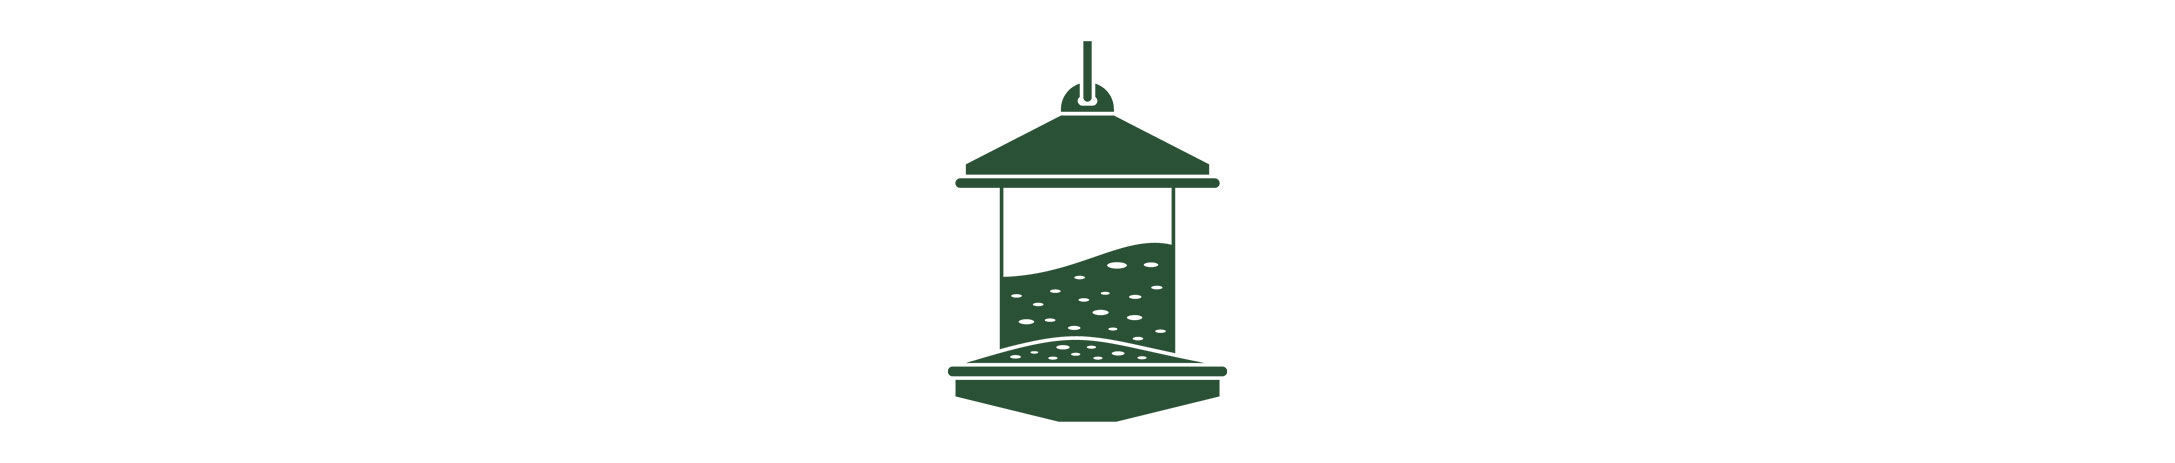 bird feeder icon